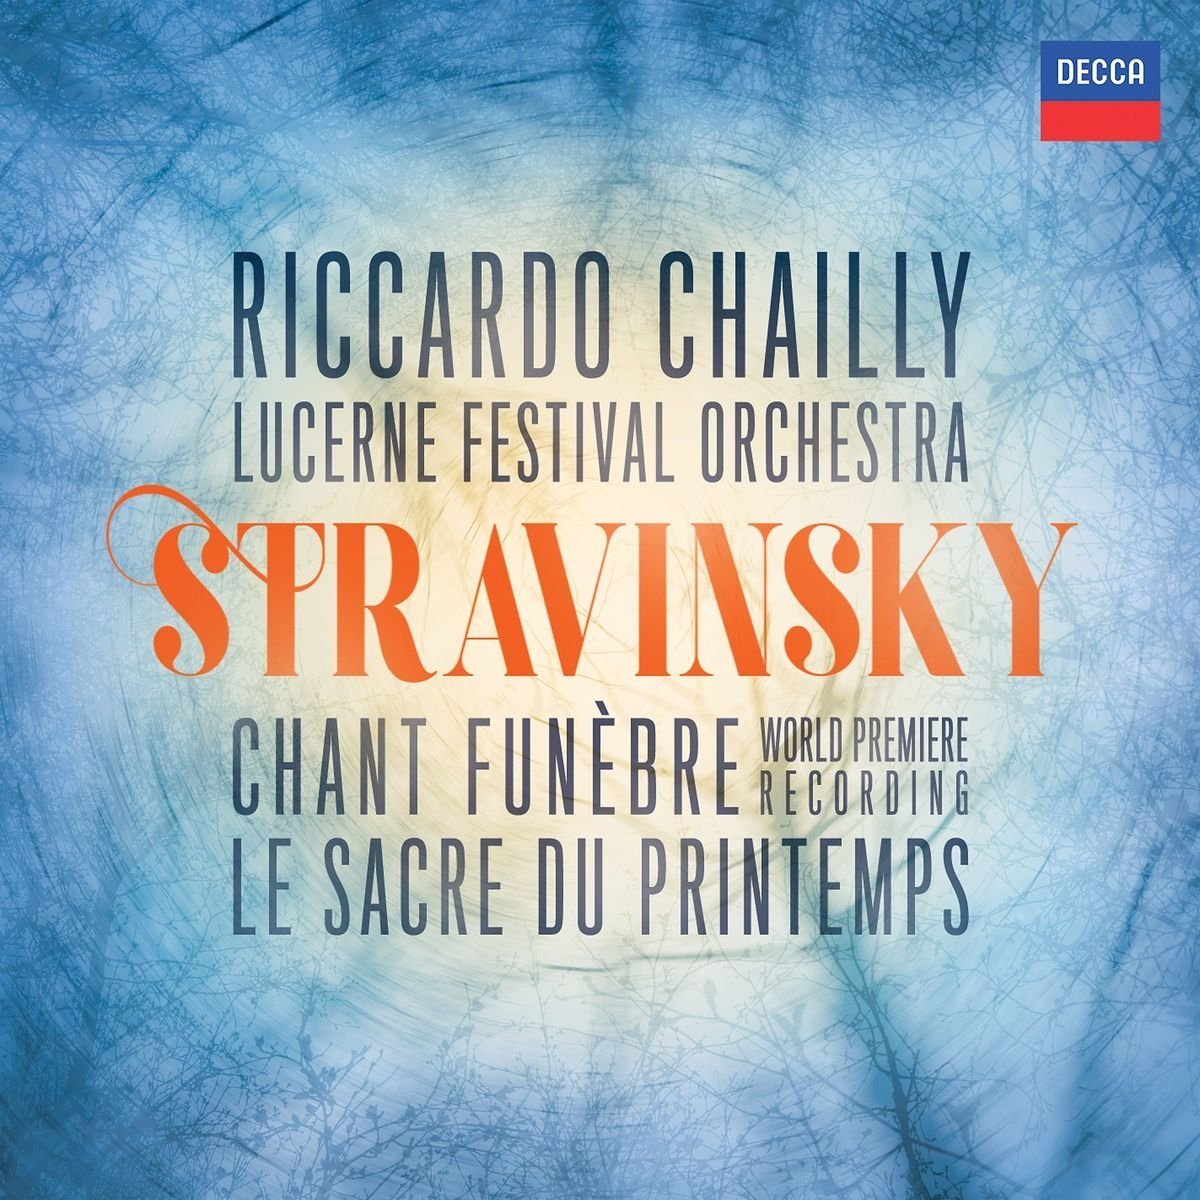 Riccardo Chailly: in uscita il Chant Funébre di Stravisnky